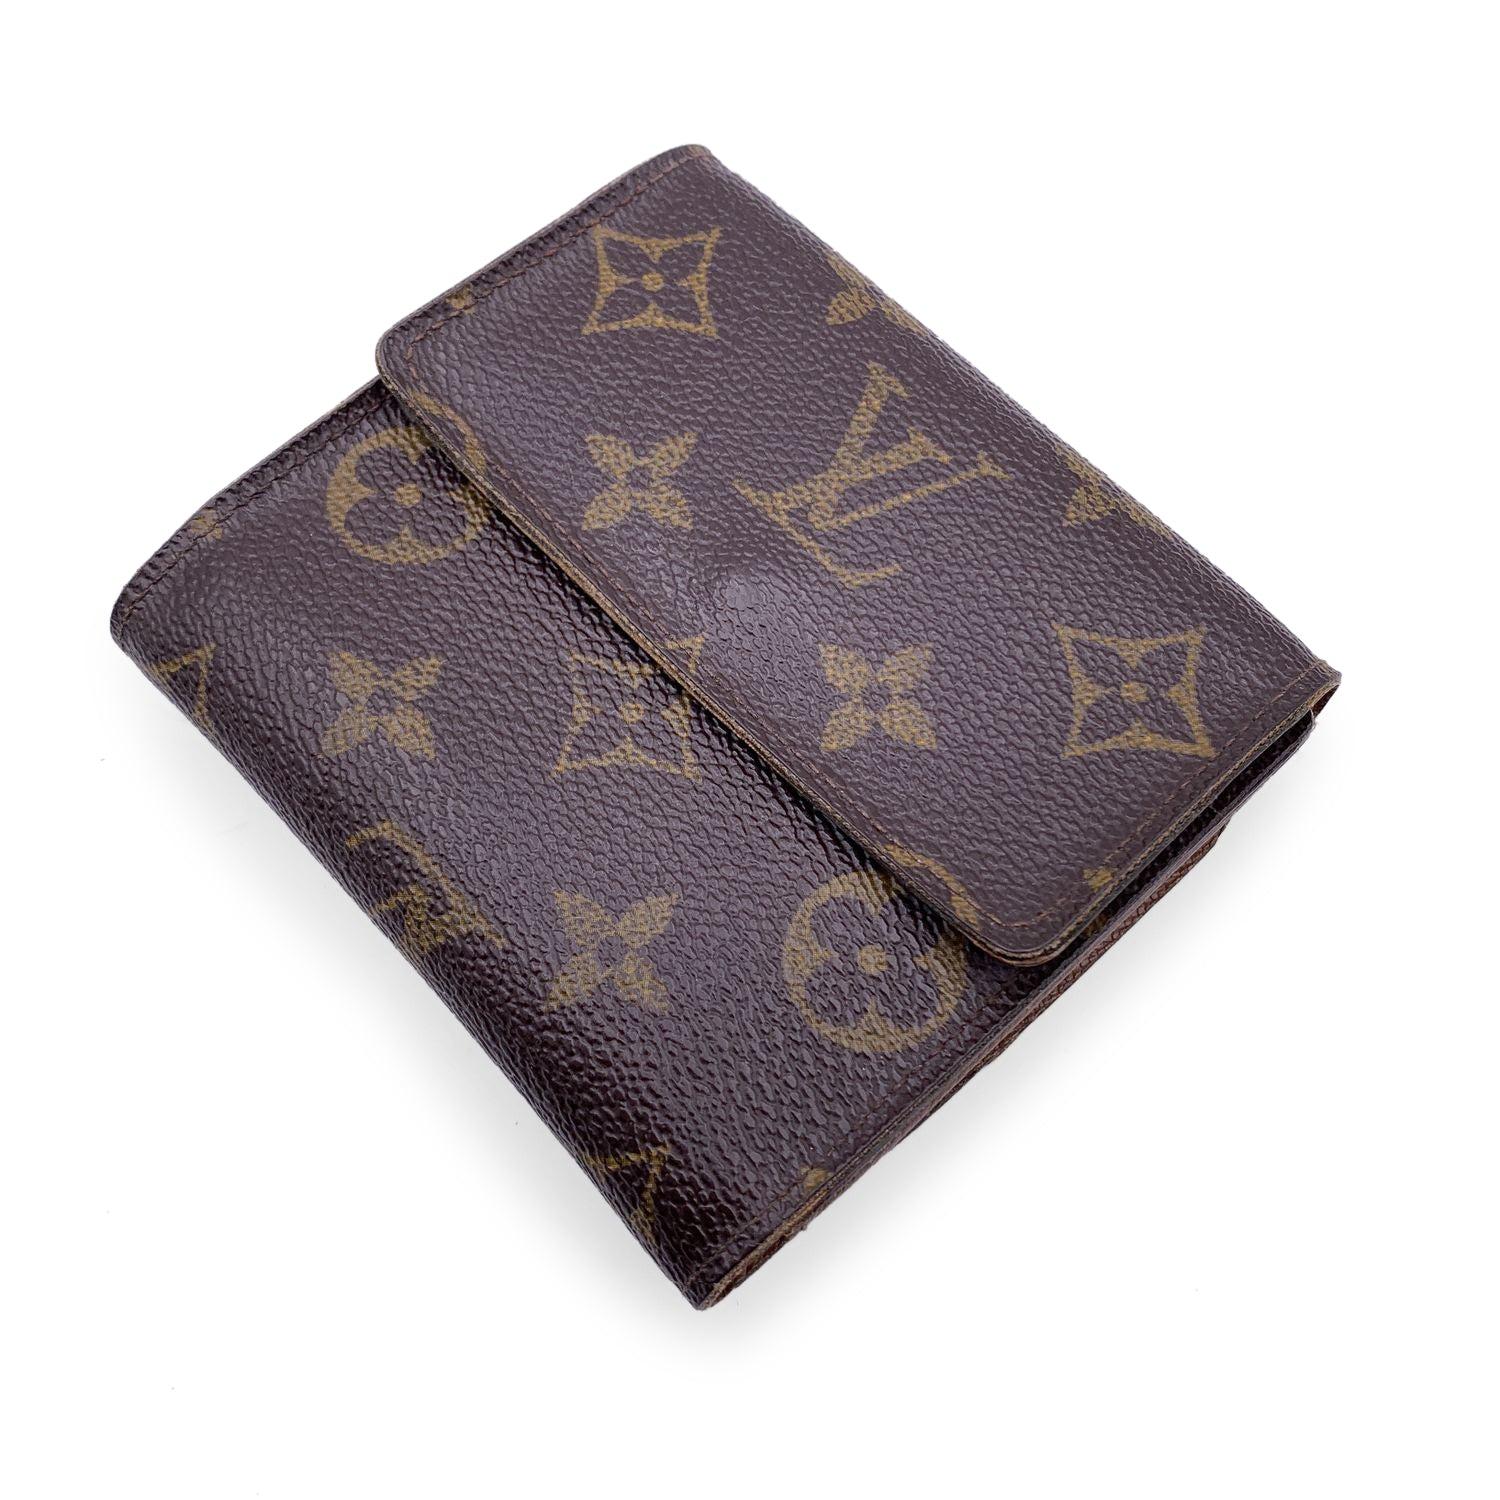 Louis Vuitton 'Elise' quadratische Geldbörse mit doppelter Seitenklappe, Modus. M61654. Aus braunem Segeltuch mit Monogrammen gefertigt. Innenfutter aus braunem Leder. 1 Münzfach auf einer Seite und ein Klappfach auf der anderen Seite, mit 1